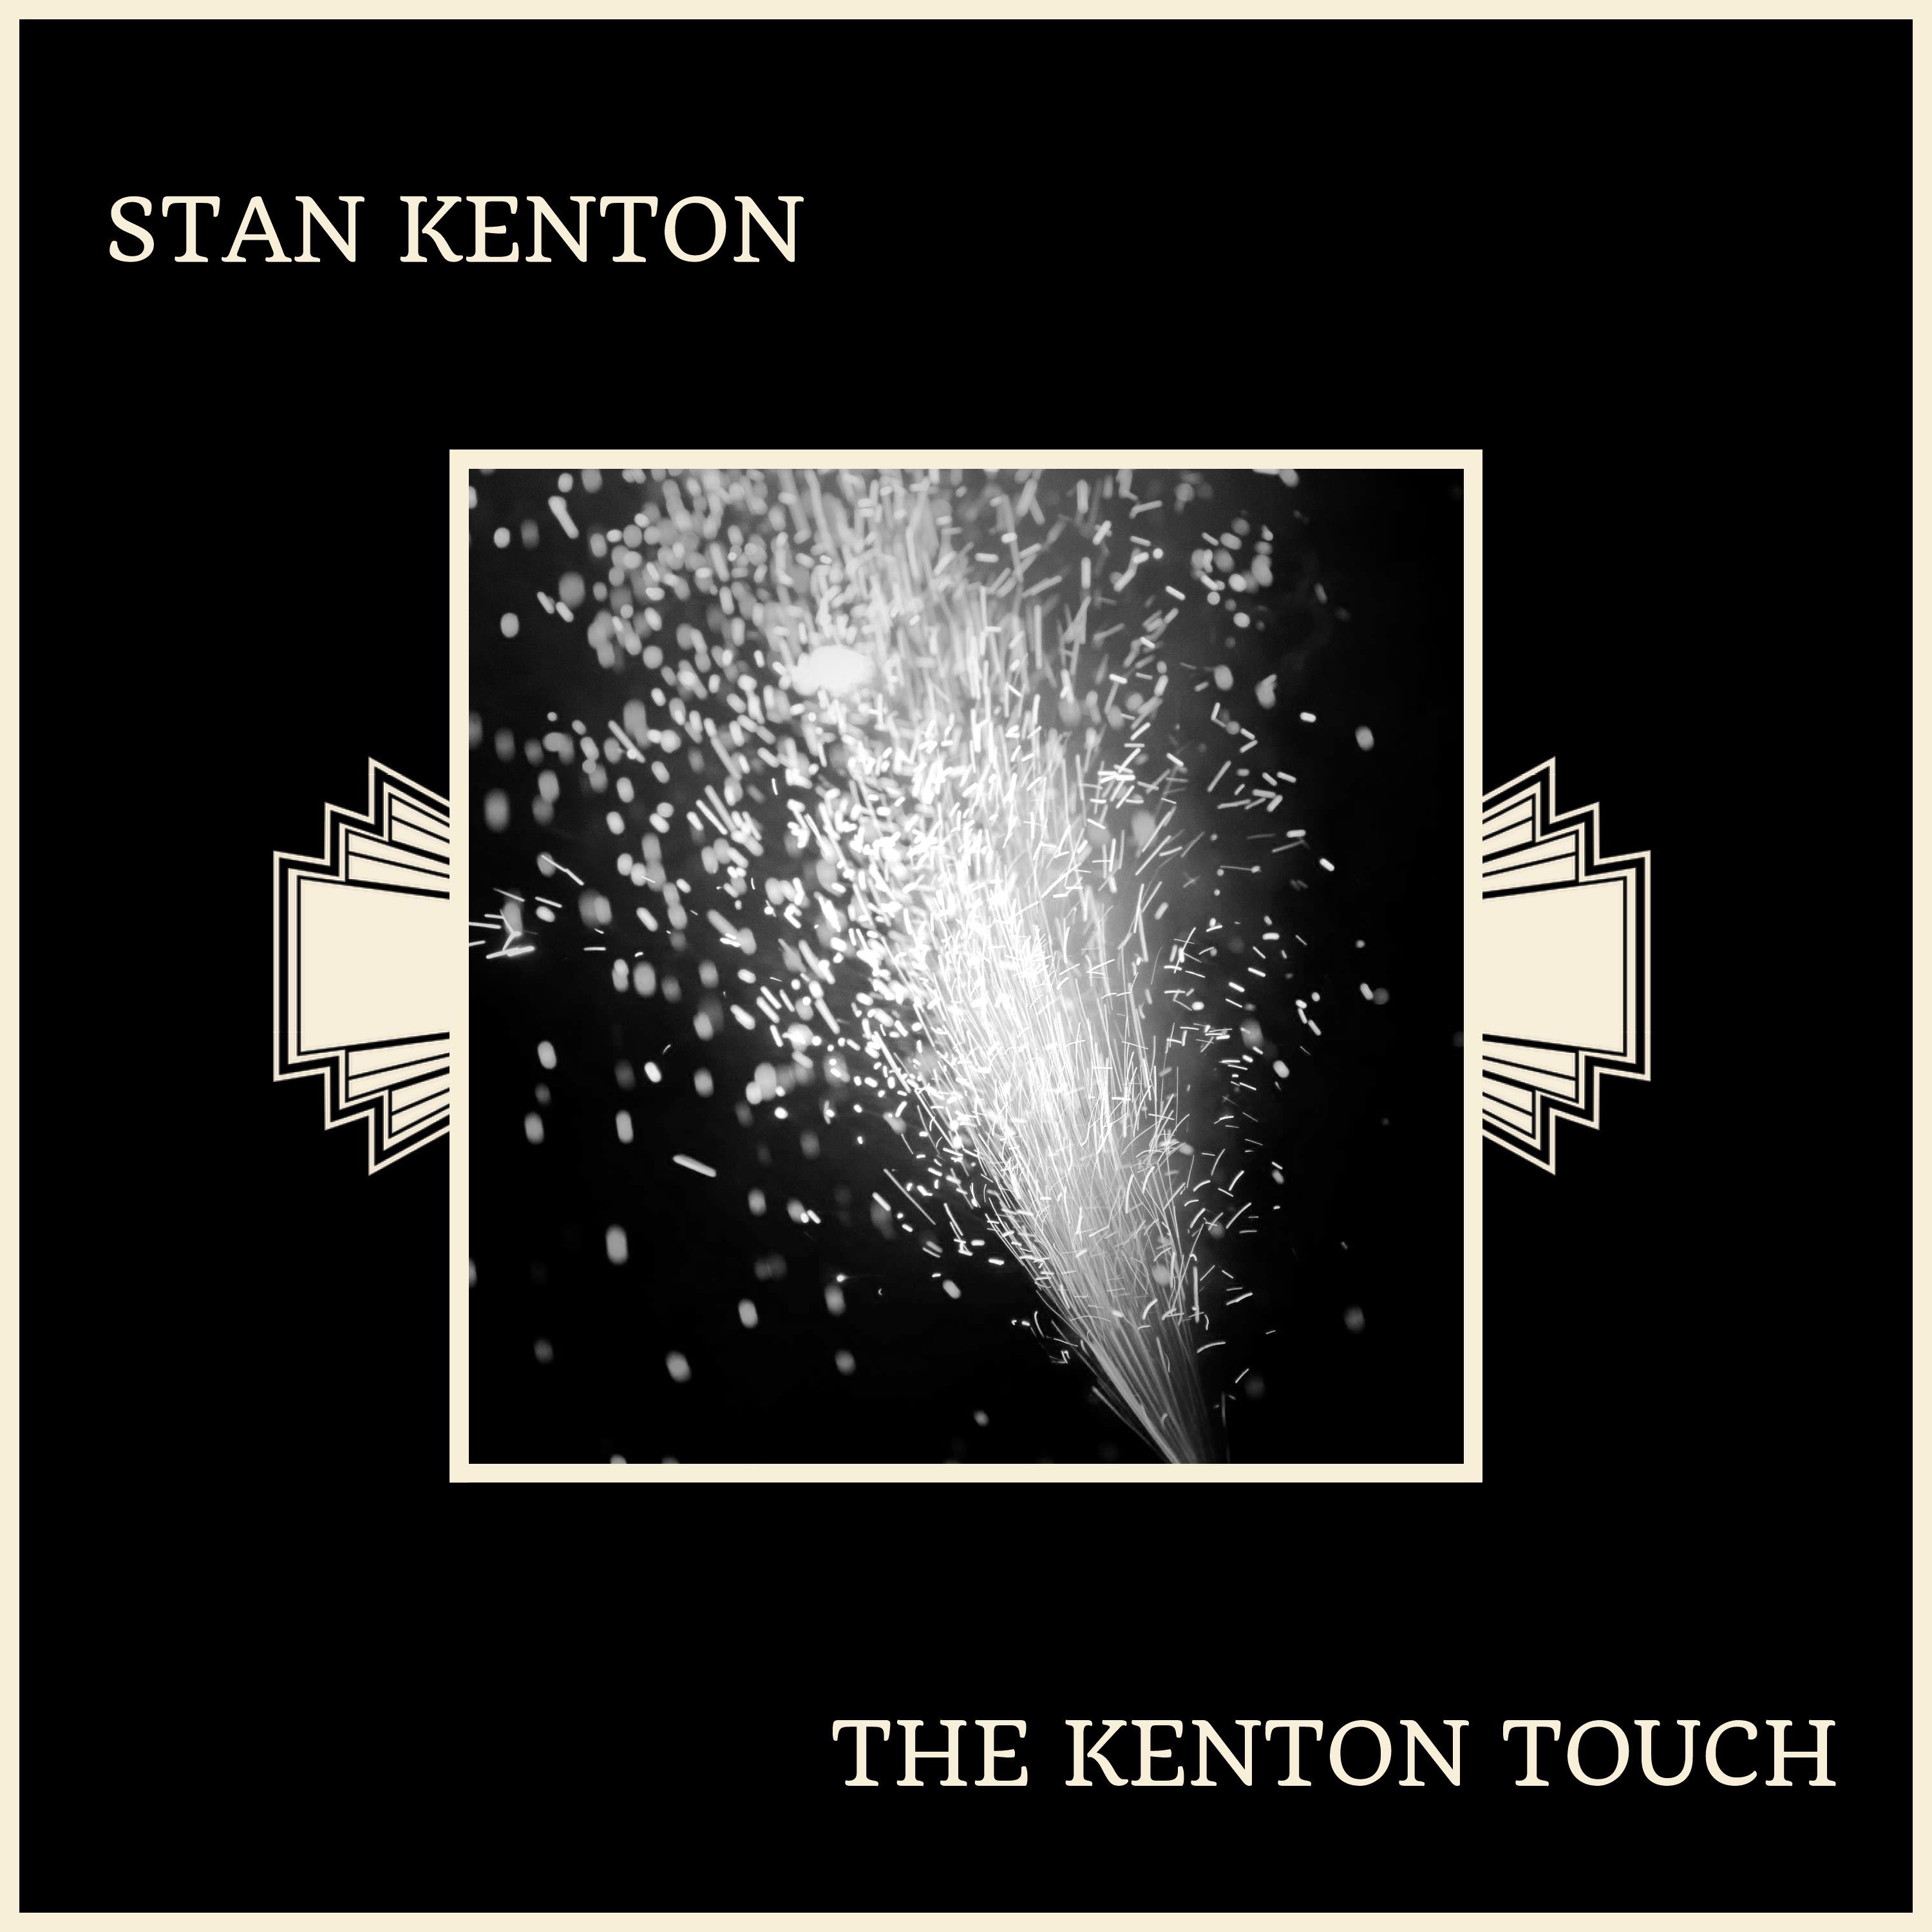 The Kenton Touch